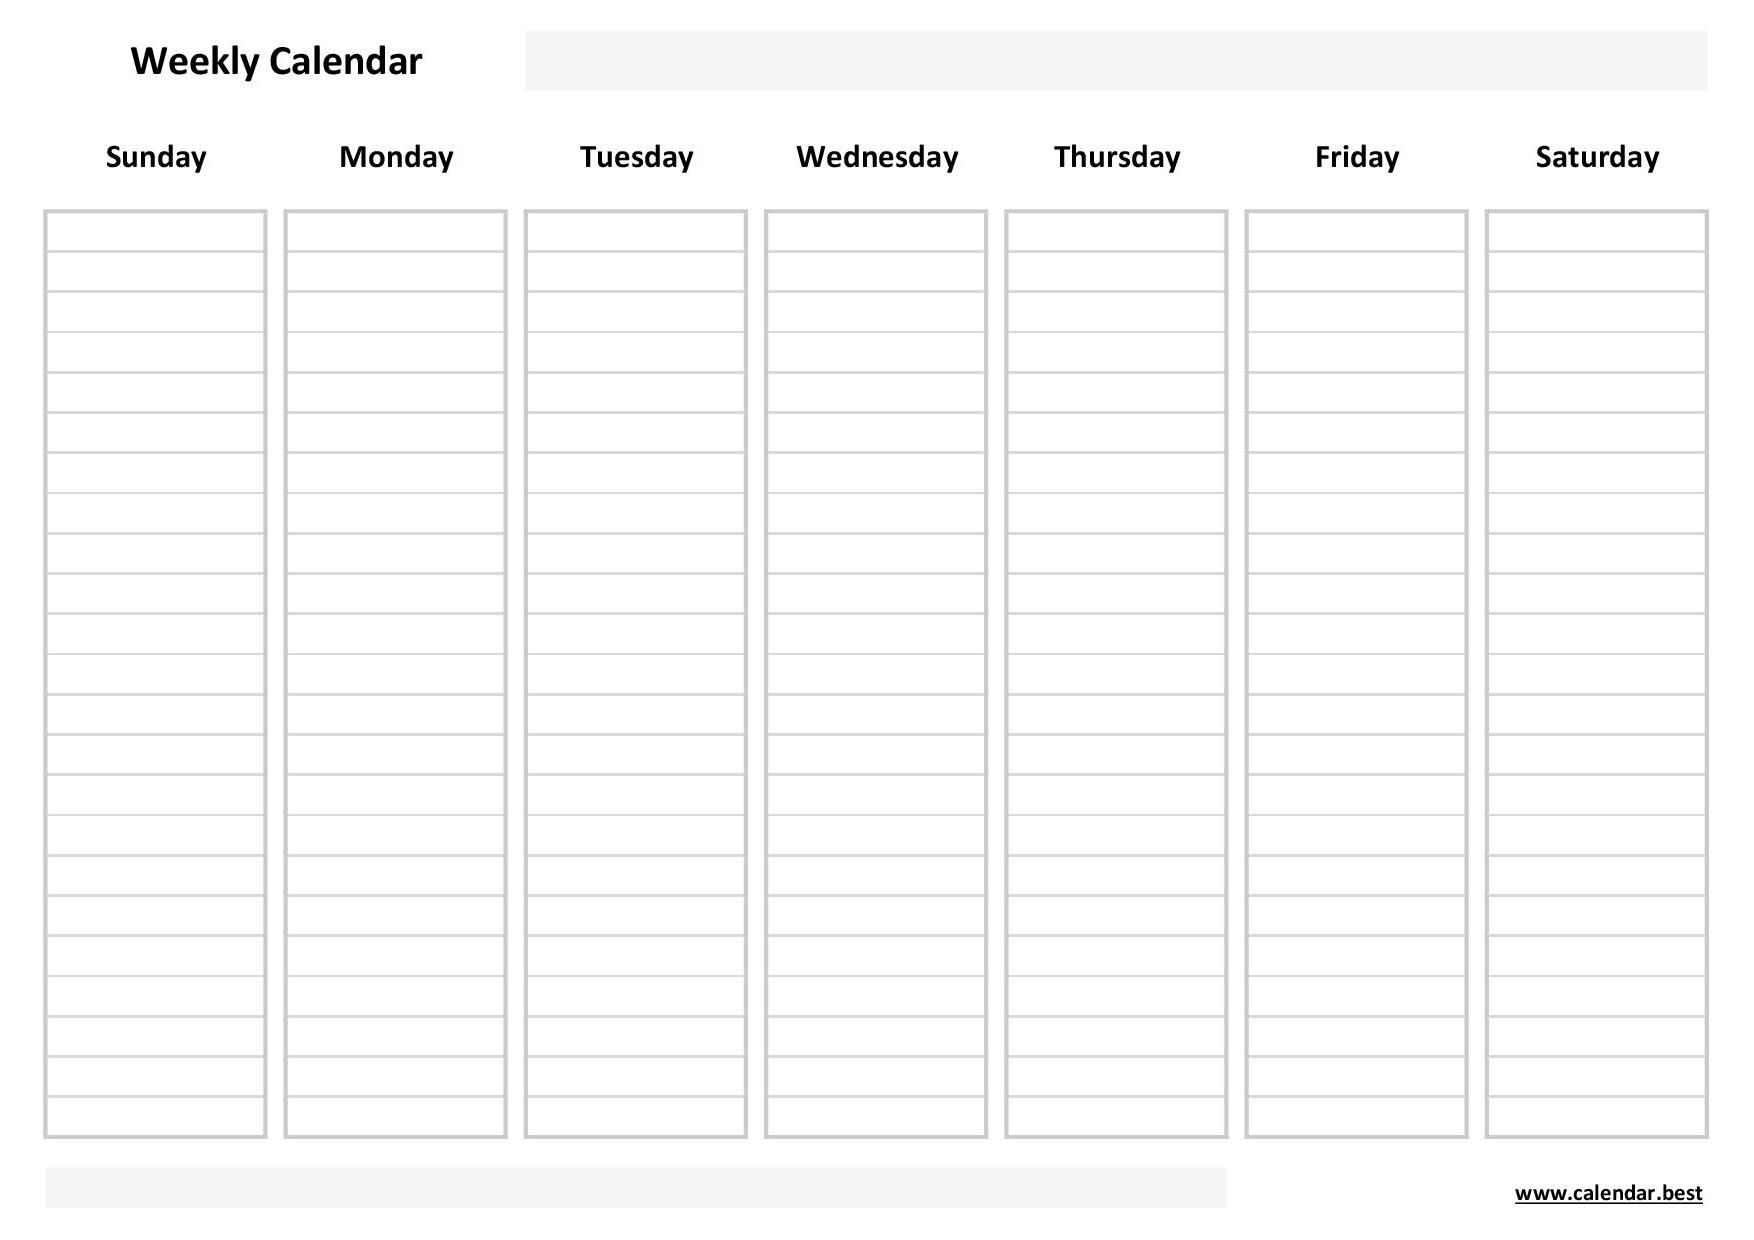 Weekly Calendar, Weekly Schedule Calendar Best